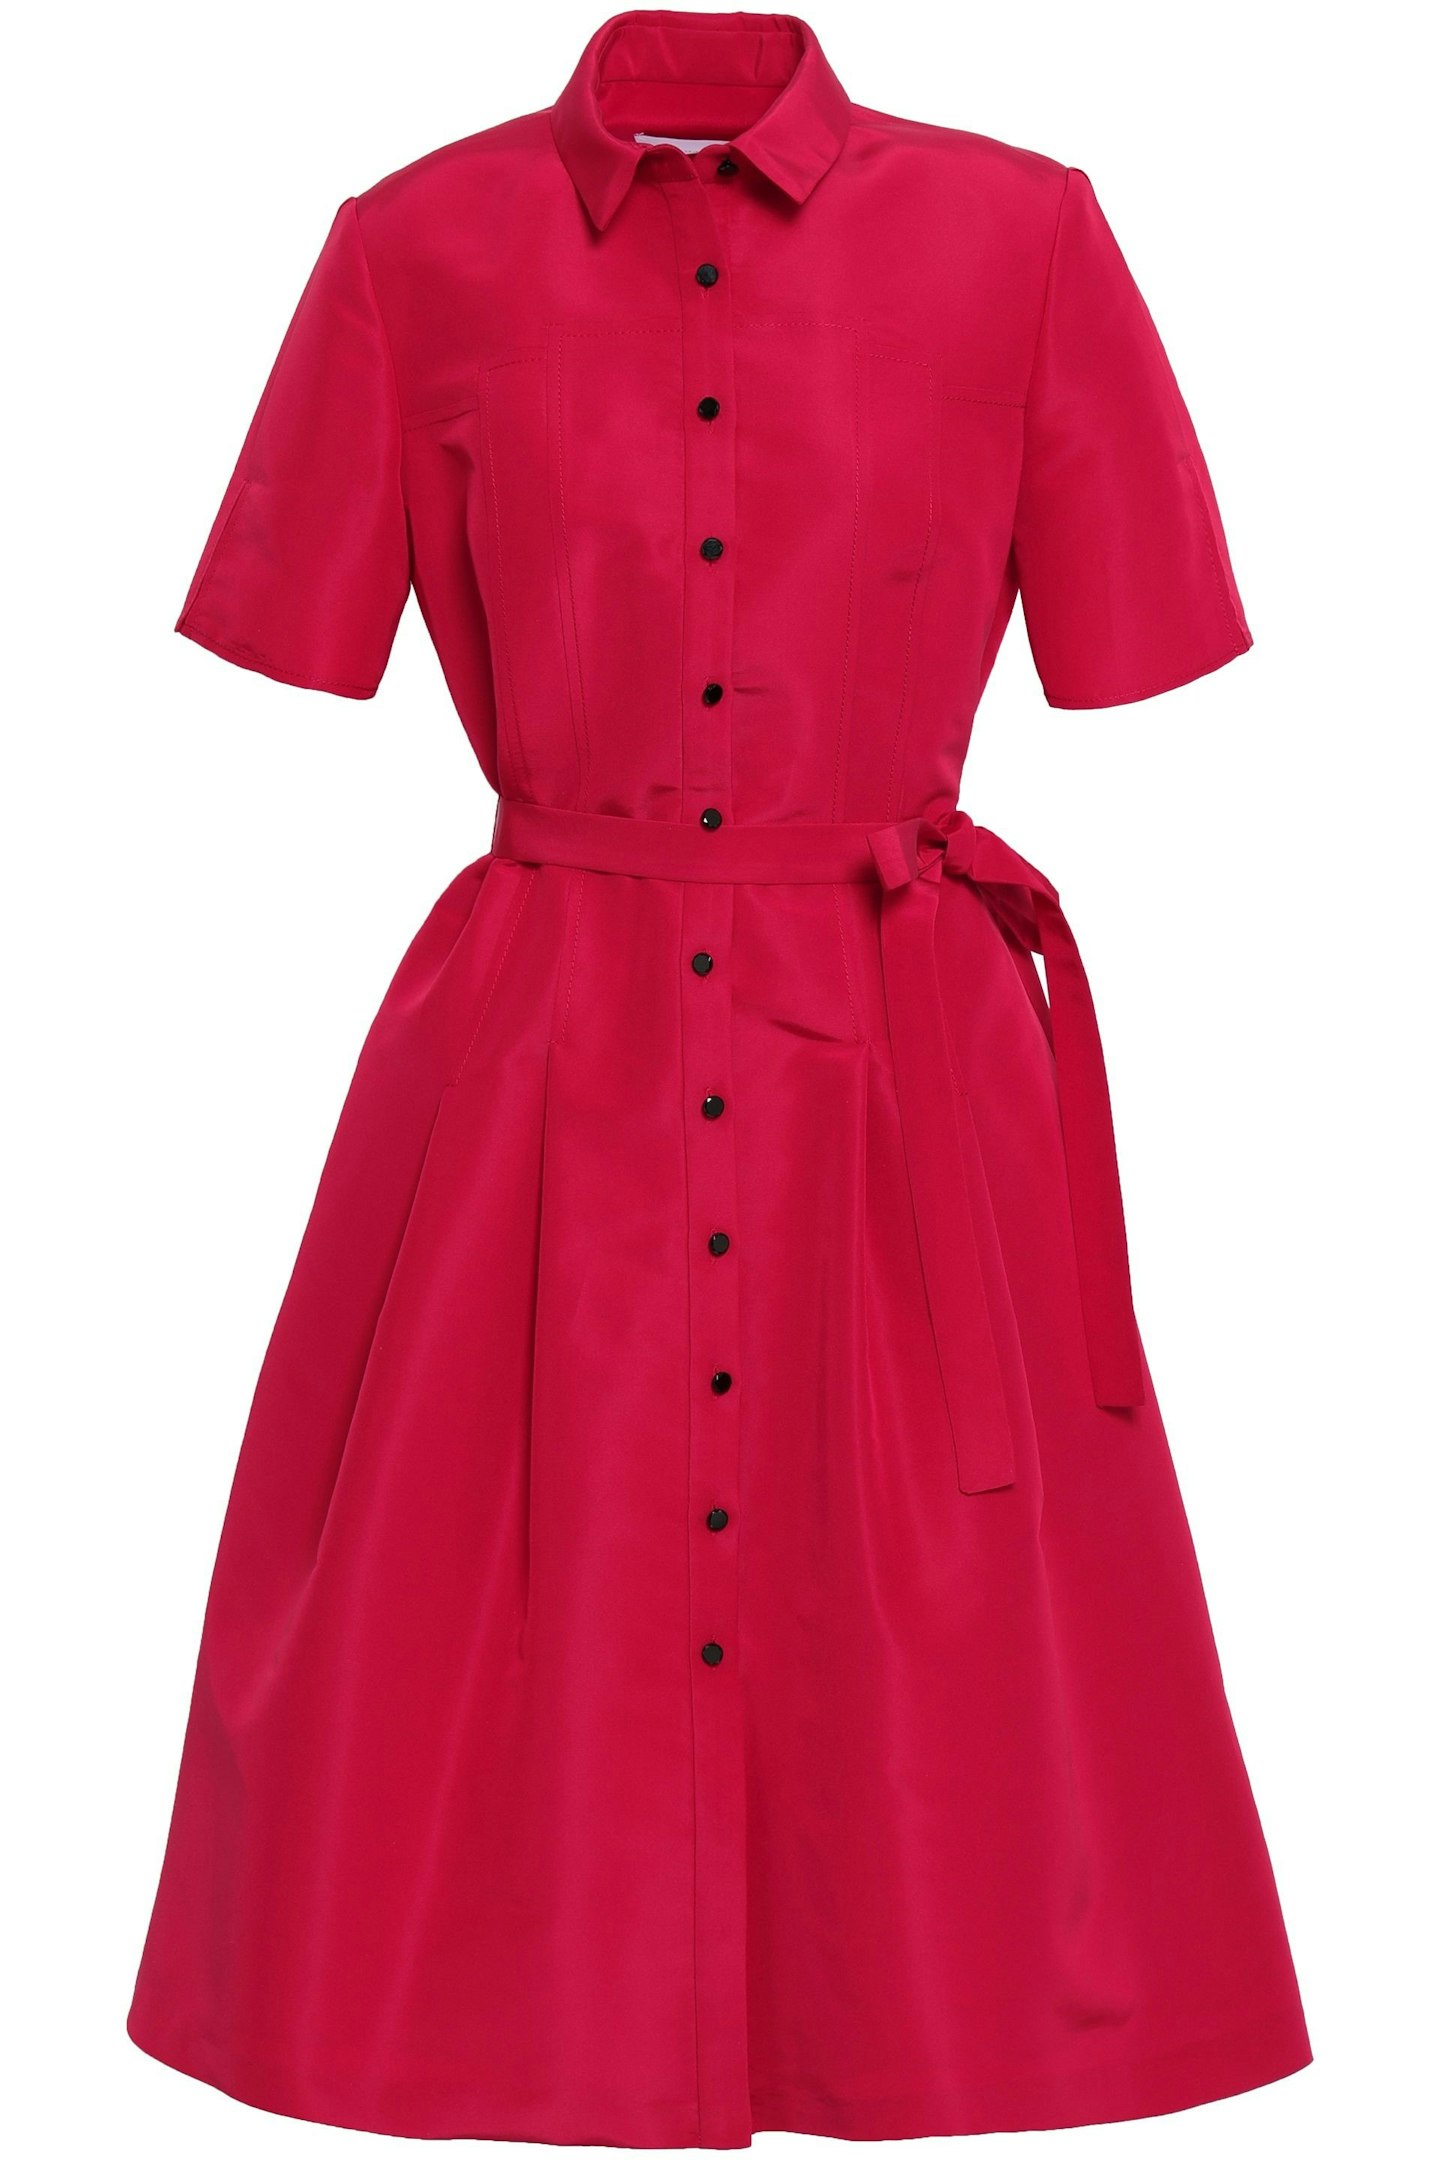 Carolina Herrera, Red Shirt Dress, £1,100